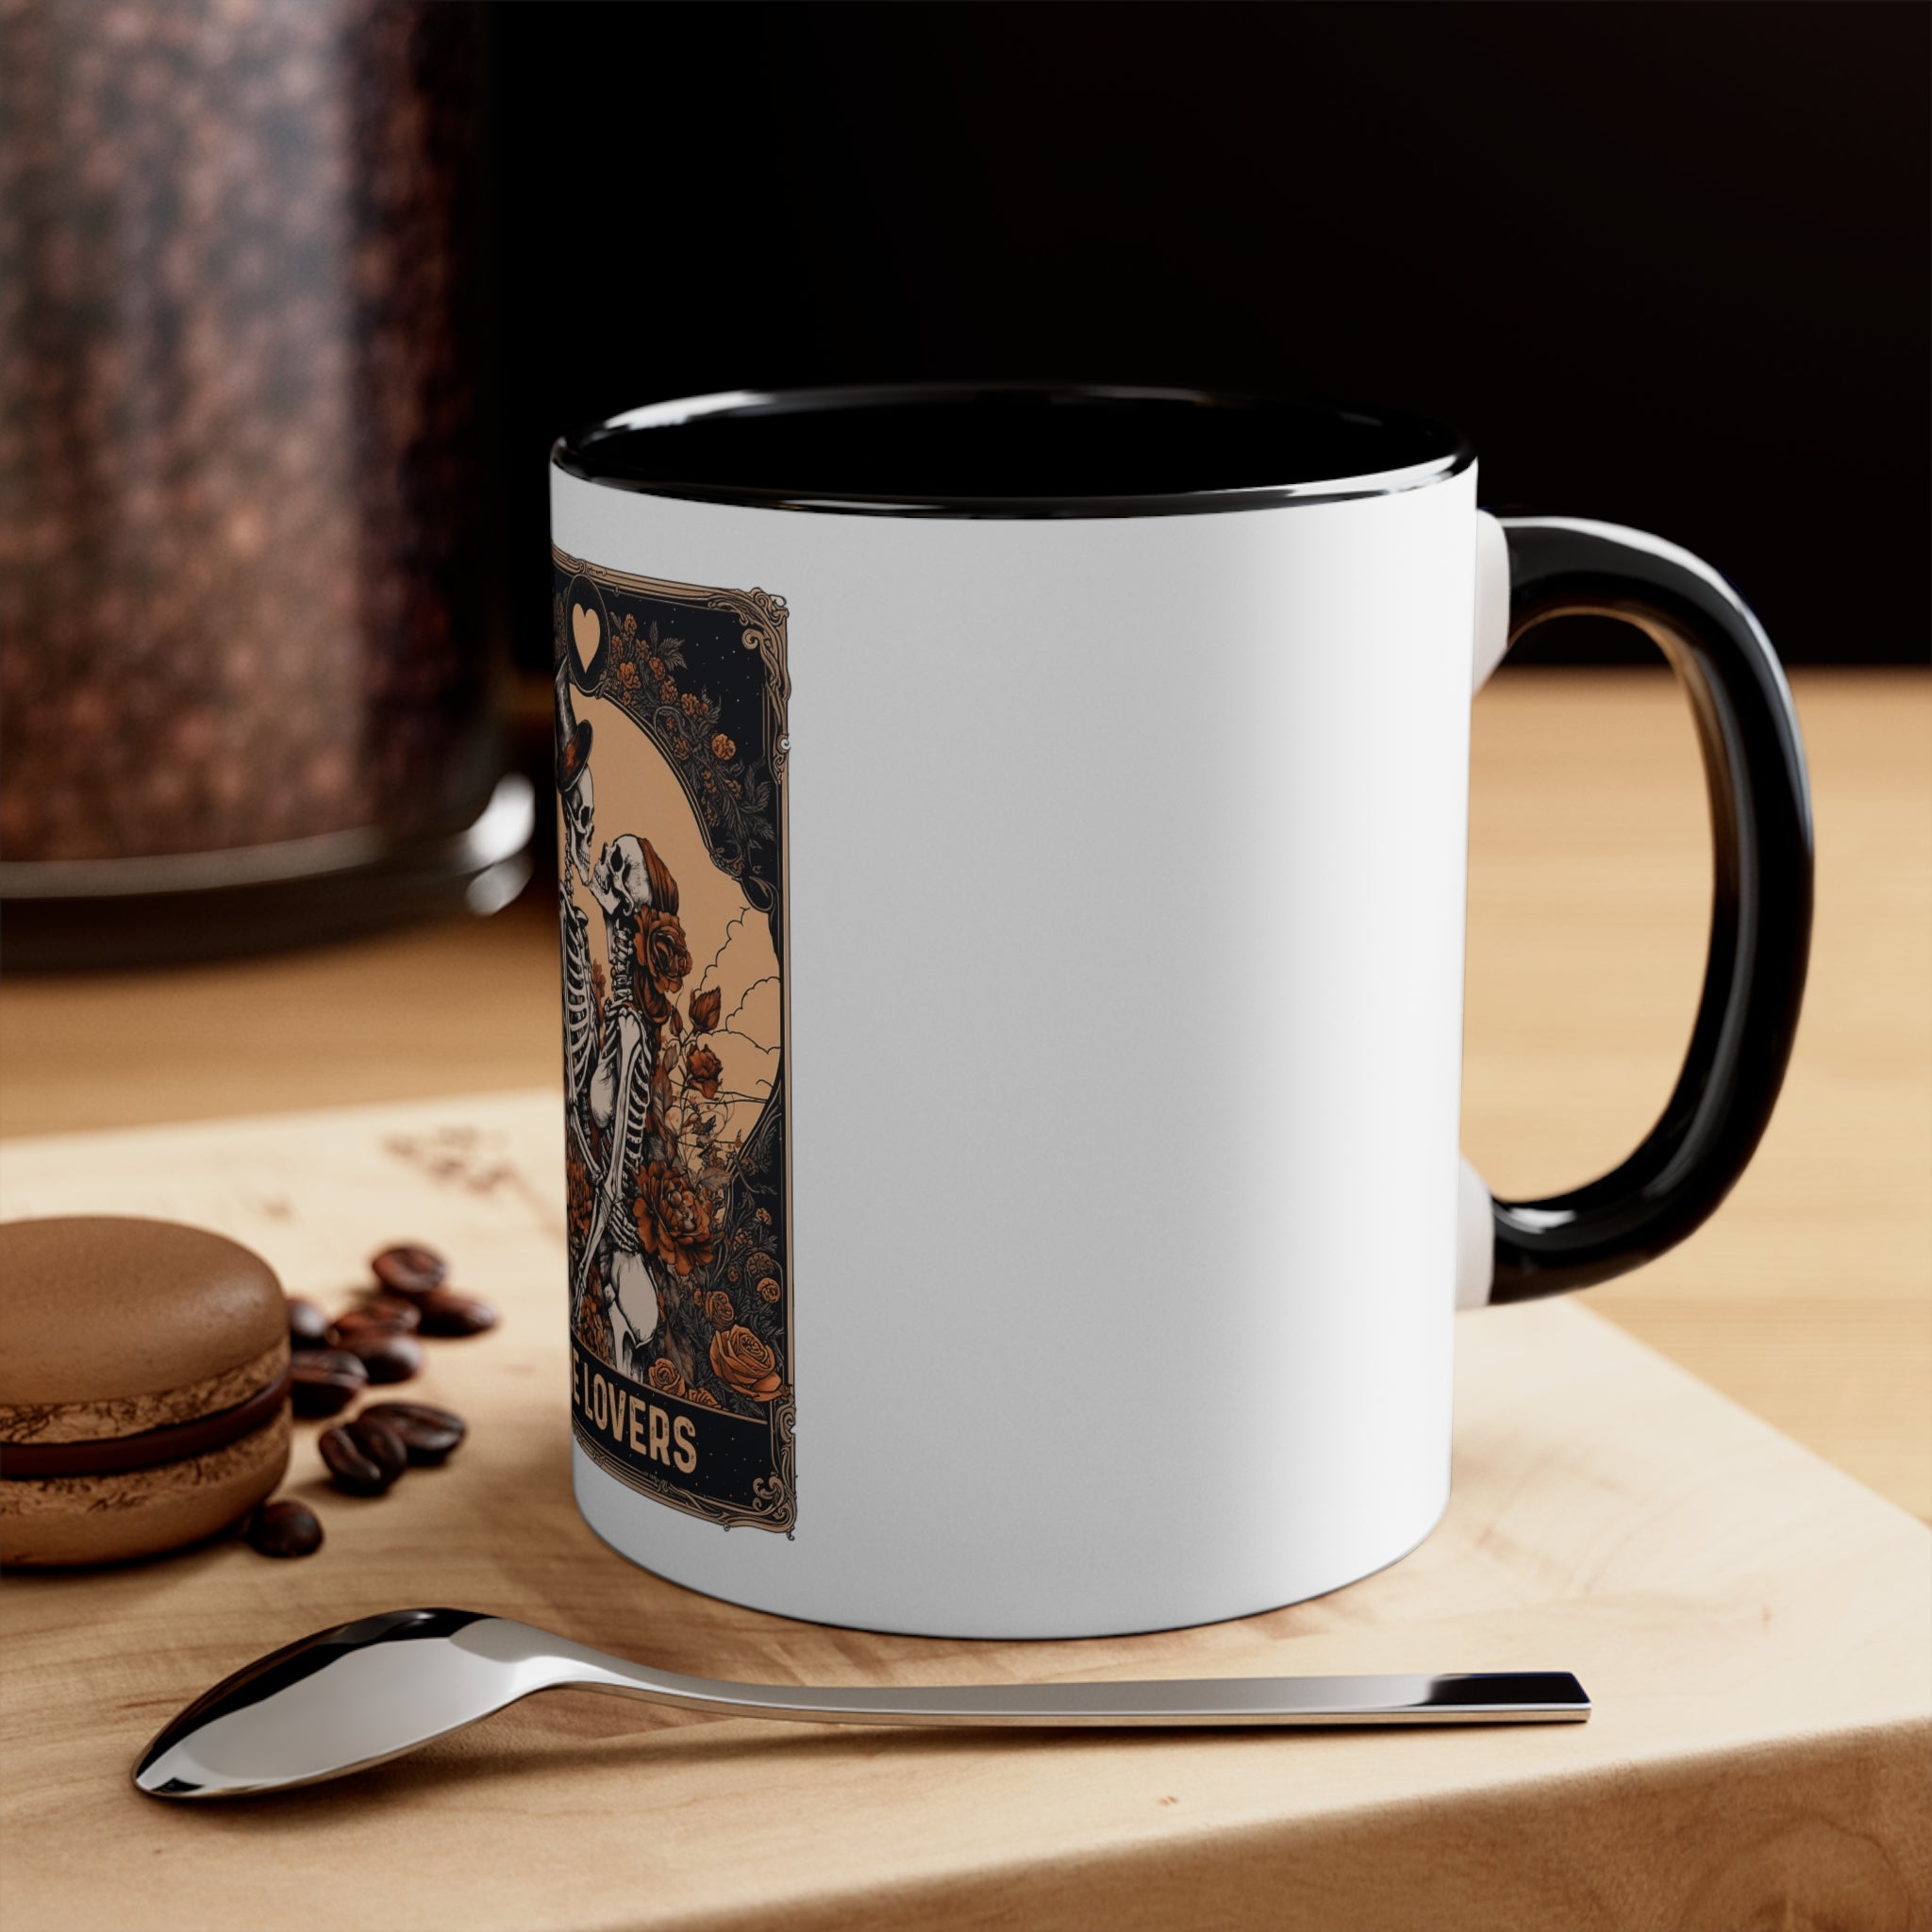 The Lovers Coffee Mug